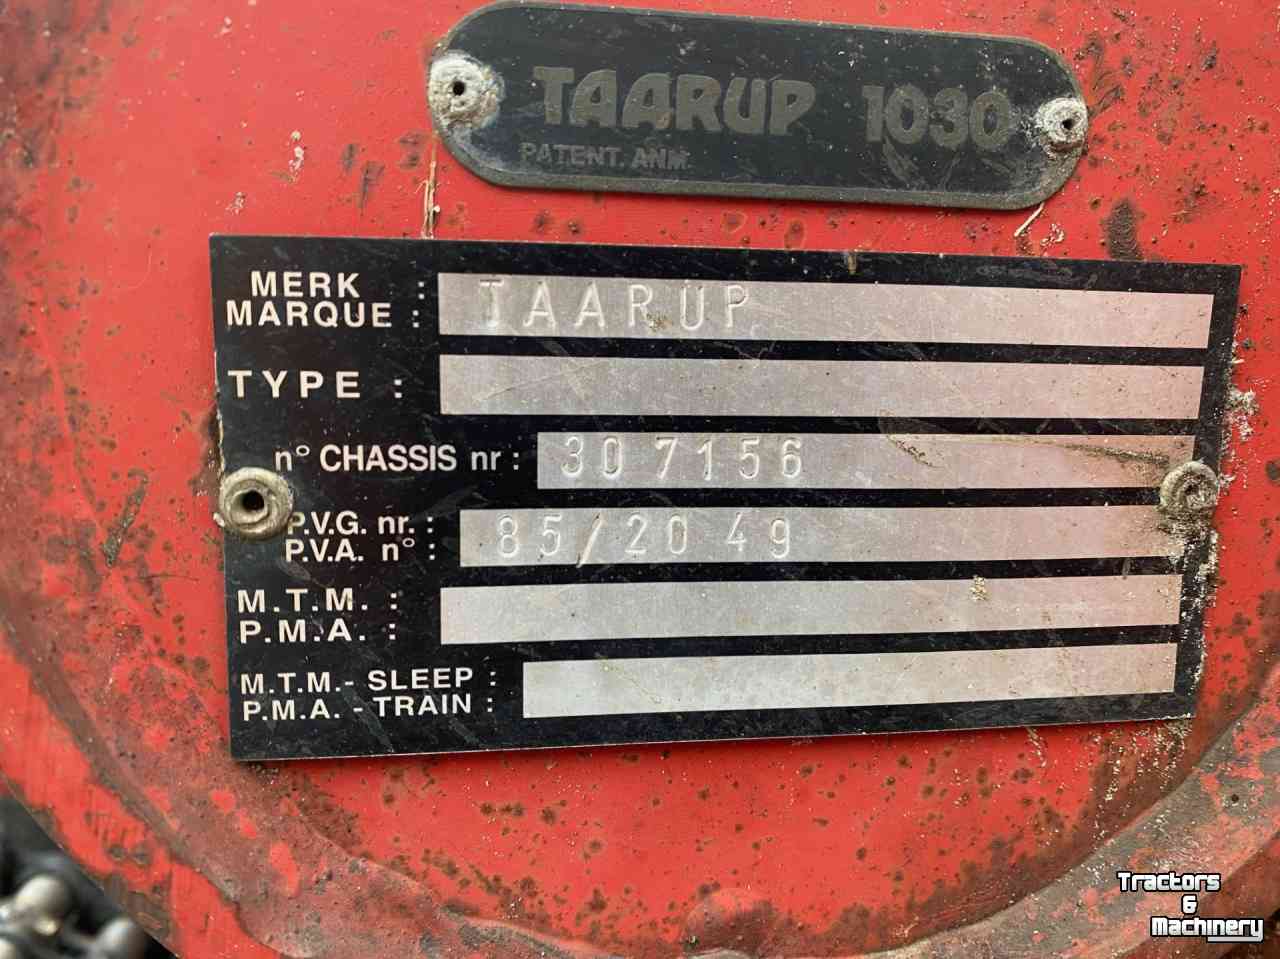 Lade- und Dosierwagen Taarup 1030